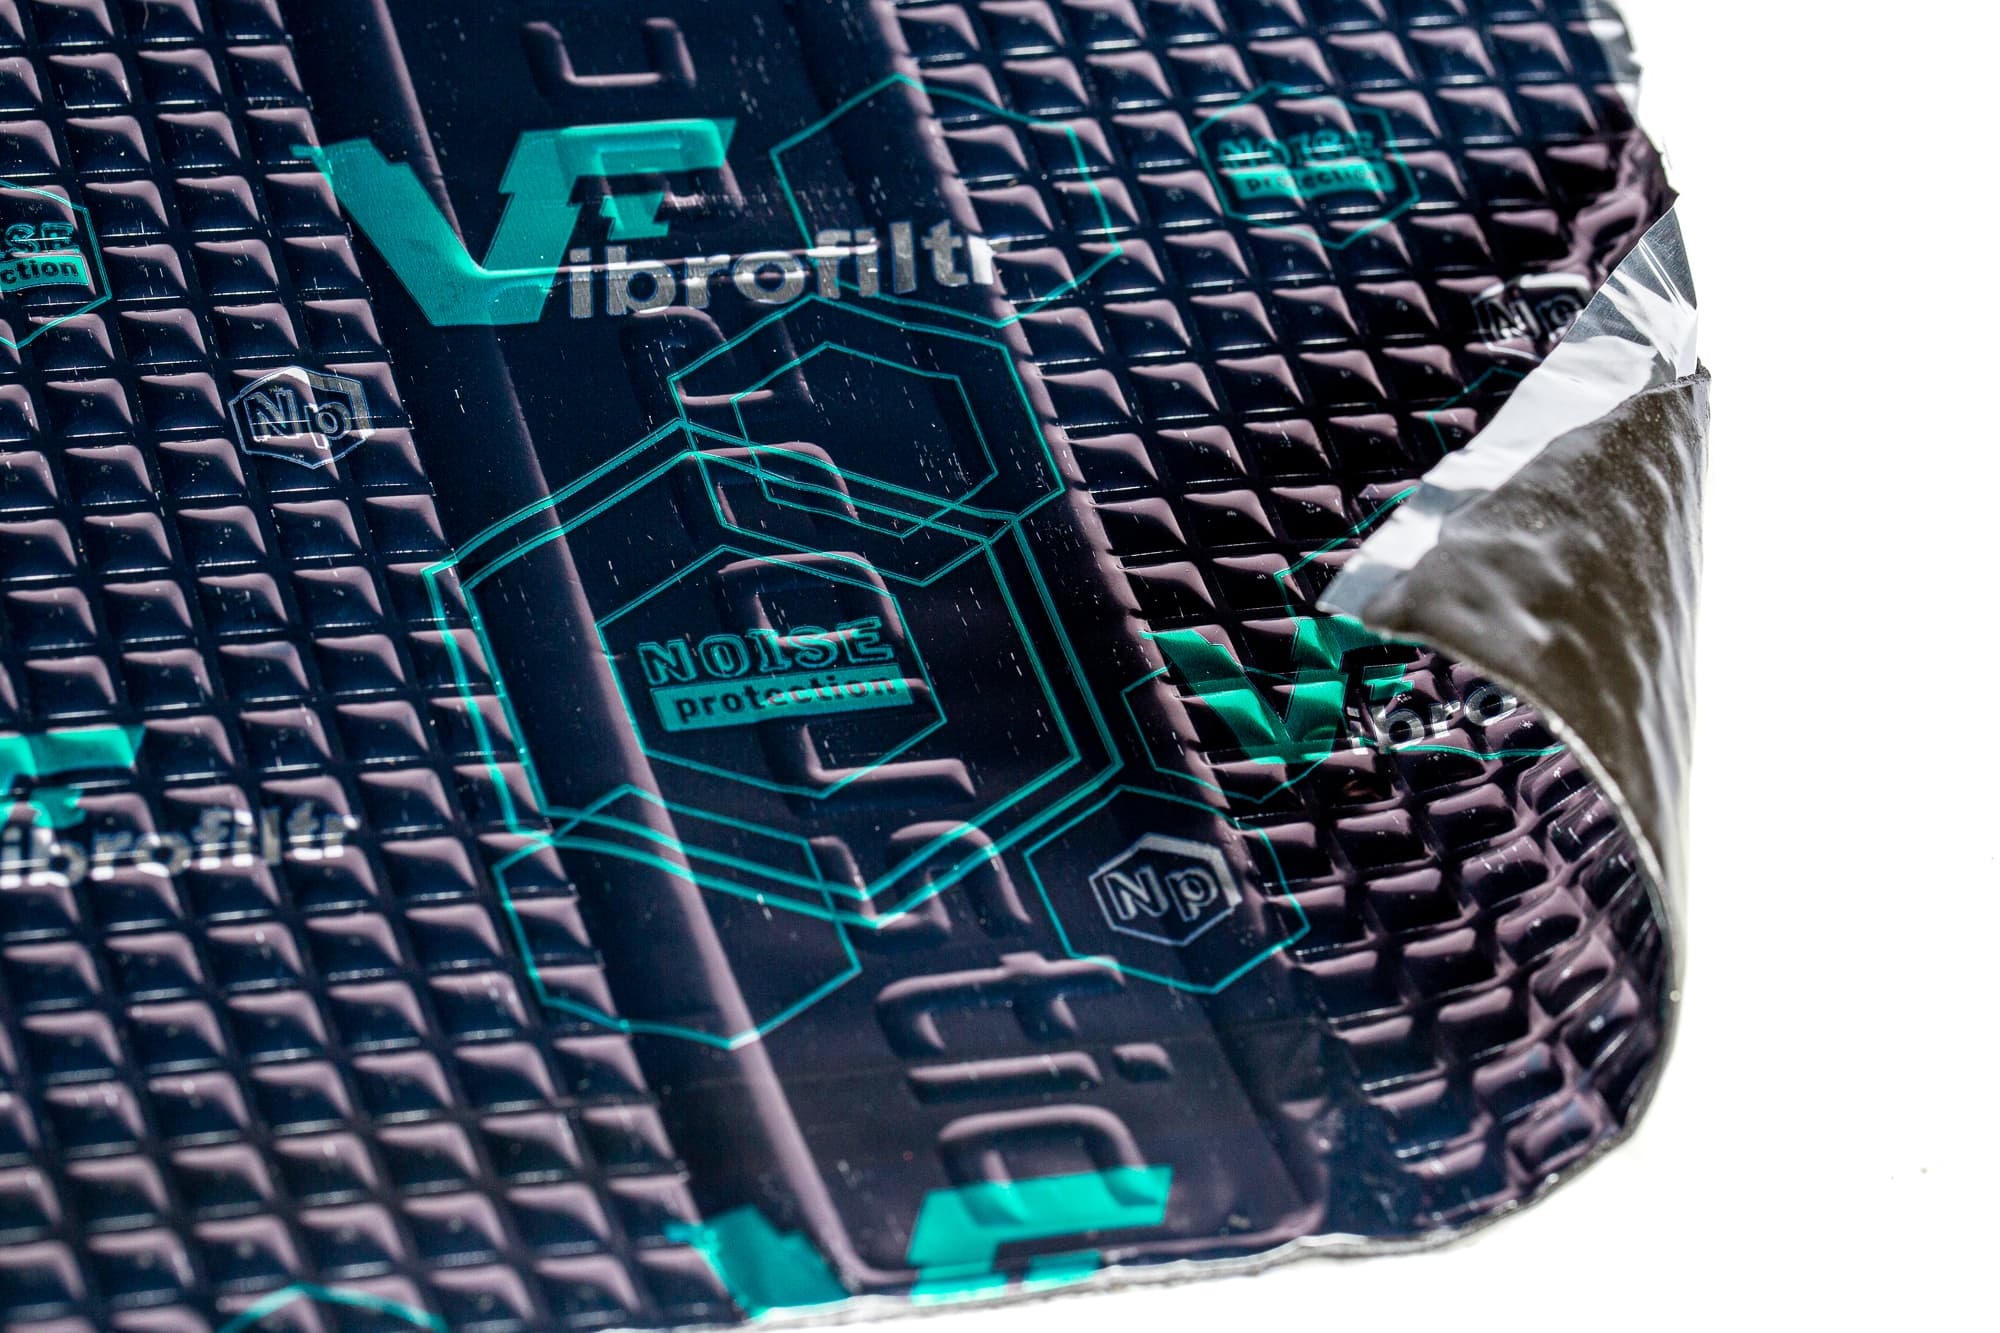 Order the Vibrofiltr Premium 1.5 mm Alubutyl VIBRO-Damping - SoundImports